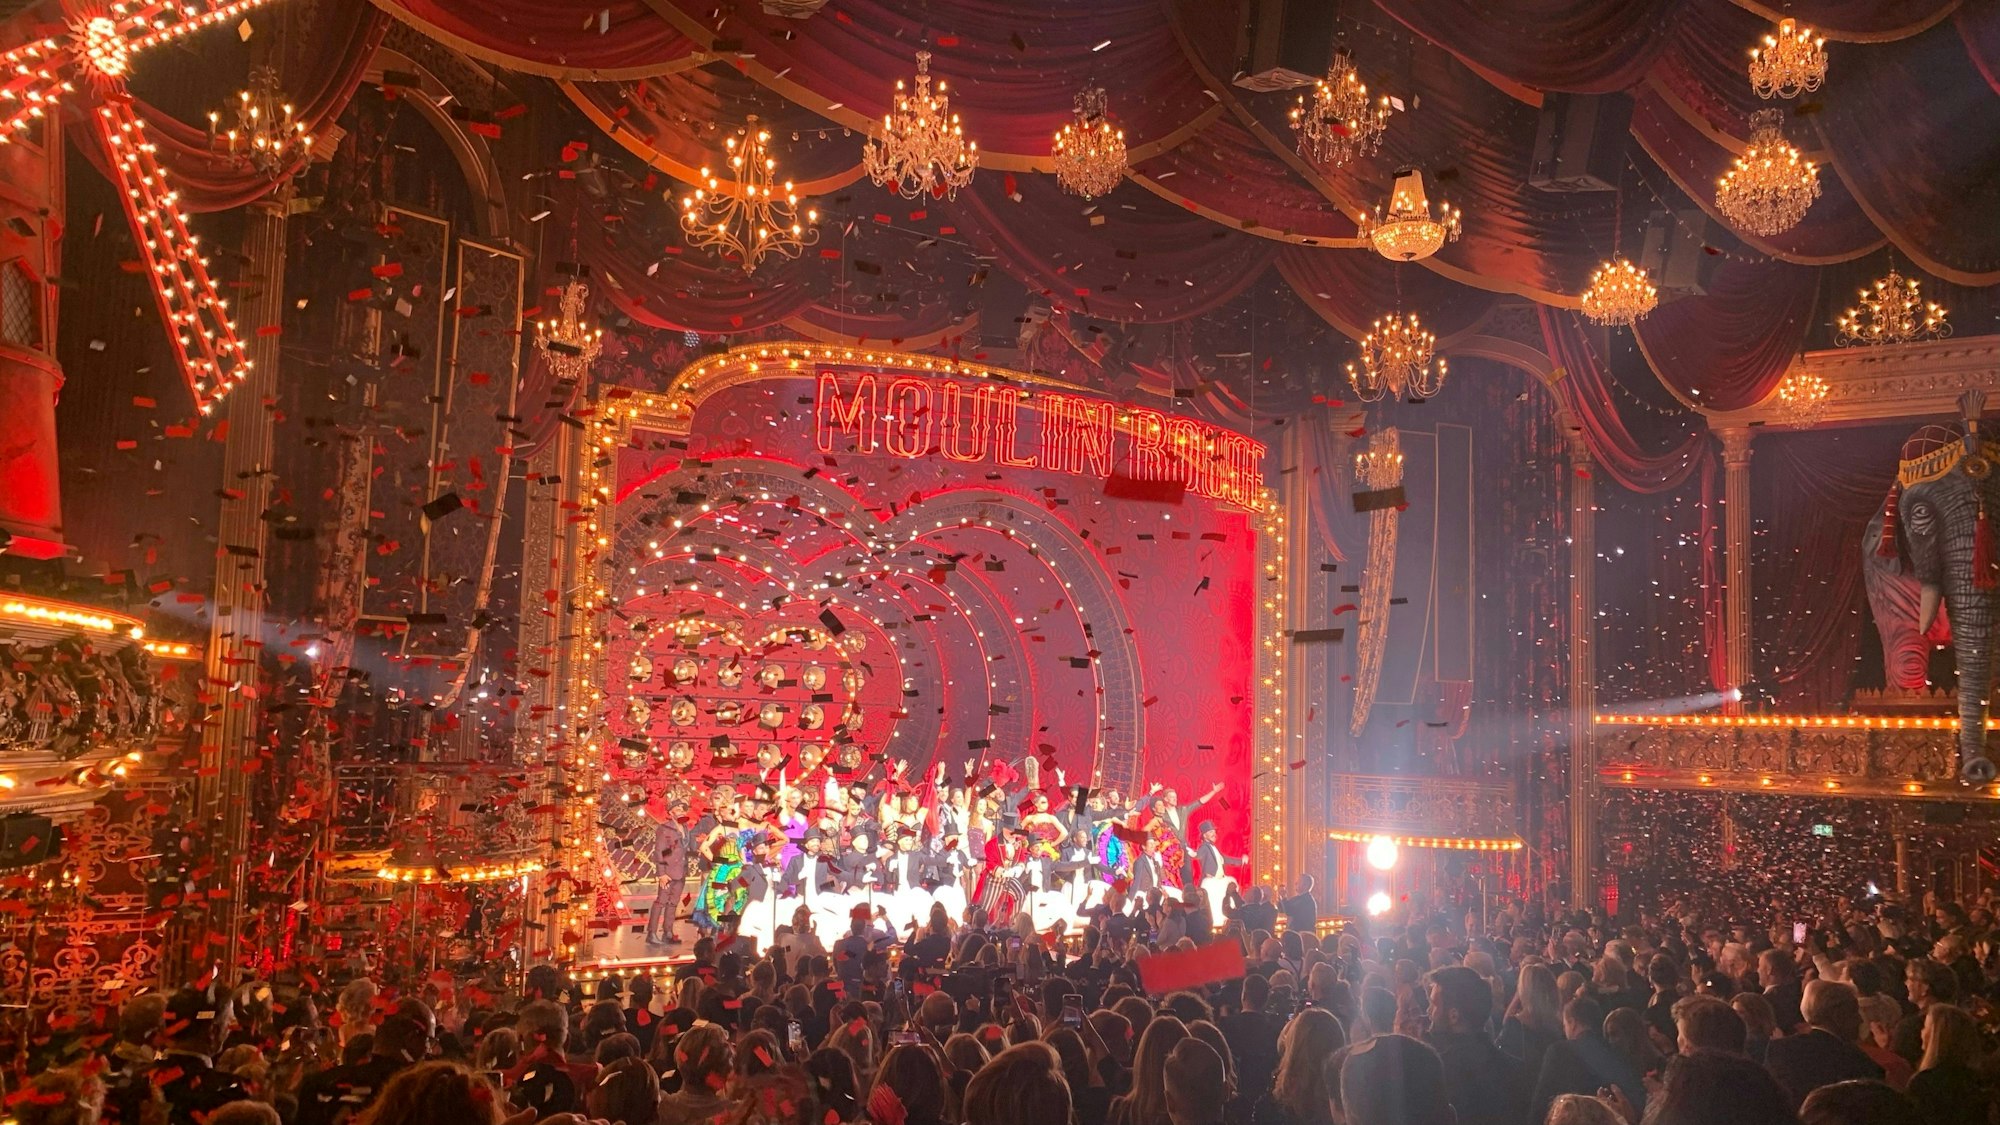 Als die Galapremiere des Musicals Moulin Rouge im Musical Dome vorbei war, wurde Konfetti durch den in rotes Licht getauchten Saal geschossen. Die Darsteller tanzten noch einmal auf der Bühne und das Publikum gab stehende Ovationen.